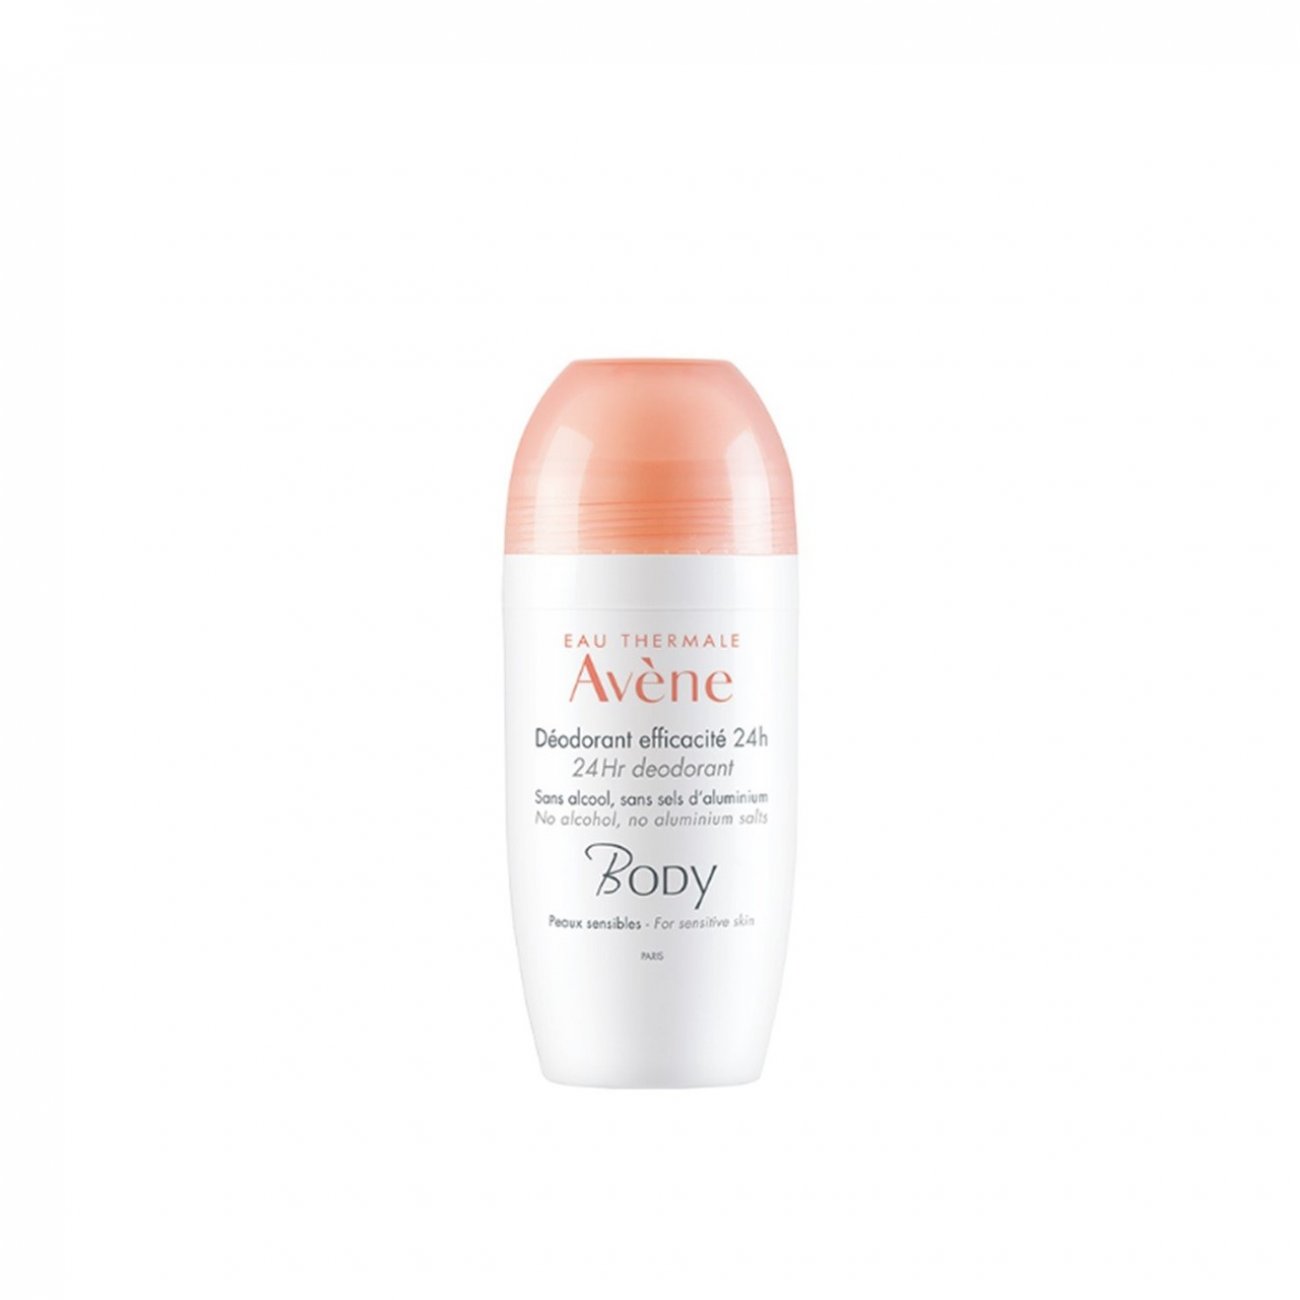 Buy Avène Body 24 Hour Deodorant 50ml oz) · USA